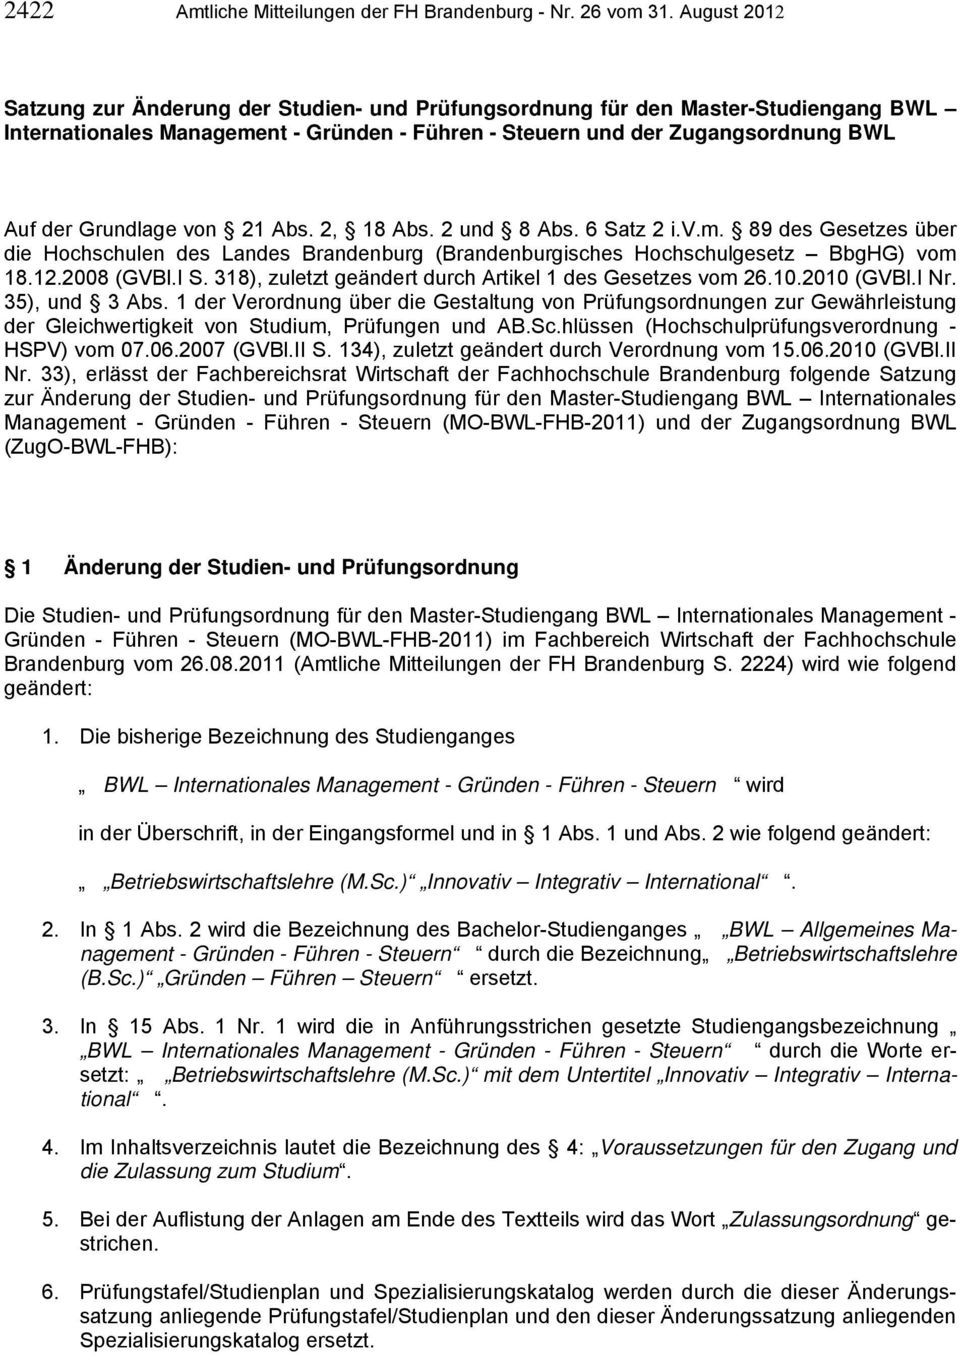 von 21 Abs. 2, 18 Abs. 2 und 8 Abs. 6 Satz 2 i.v.m. 89 des Gesetzes über die Hochschulen des Landes Brandenburg (Brandenburgisches Hochschulgesetz BbgHG) vom 18.12.2008 (GVBl.I S.